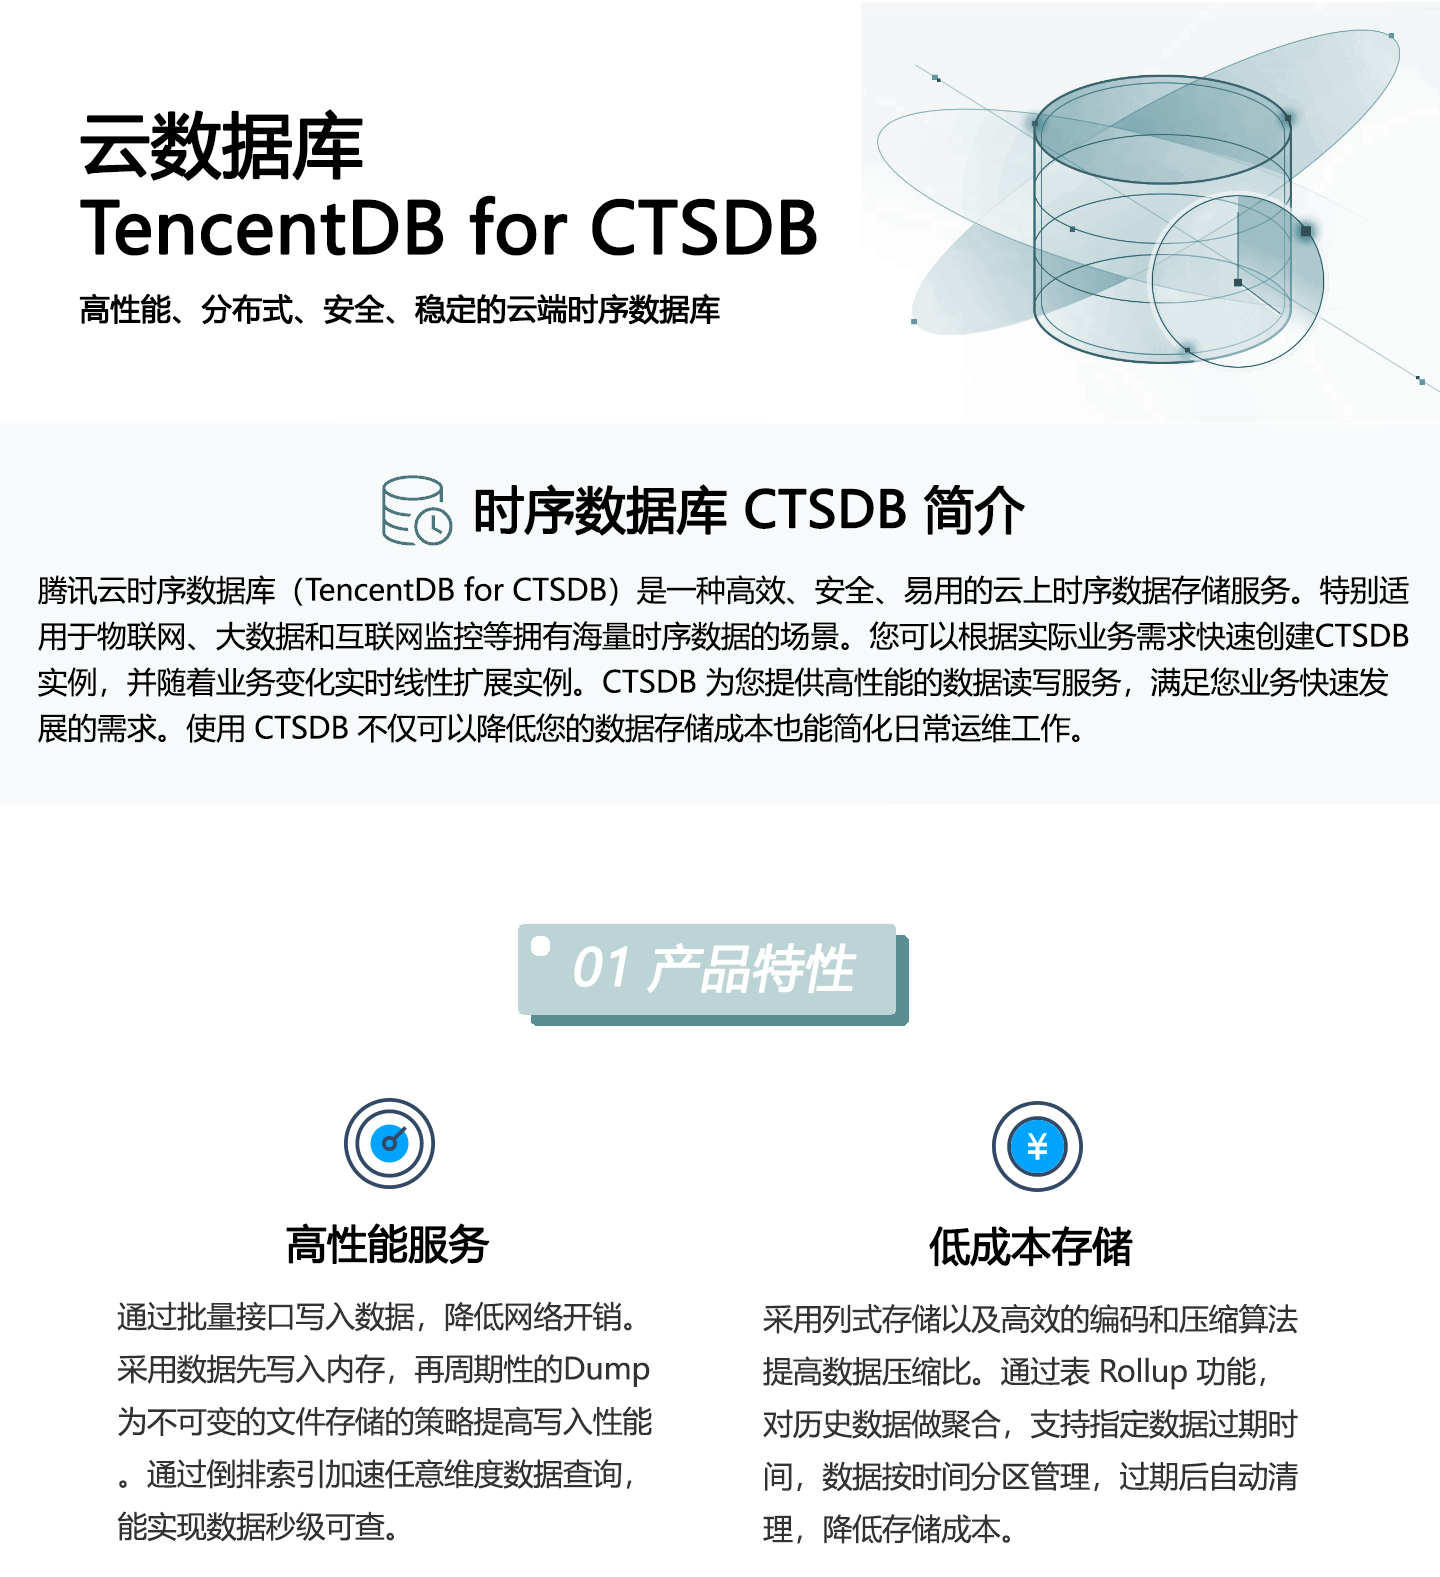 云数据库-TencentDB-for-CTSDB-1440_01.jpg